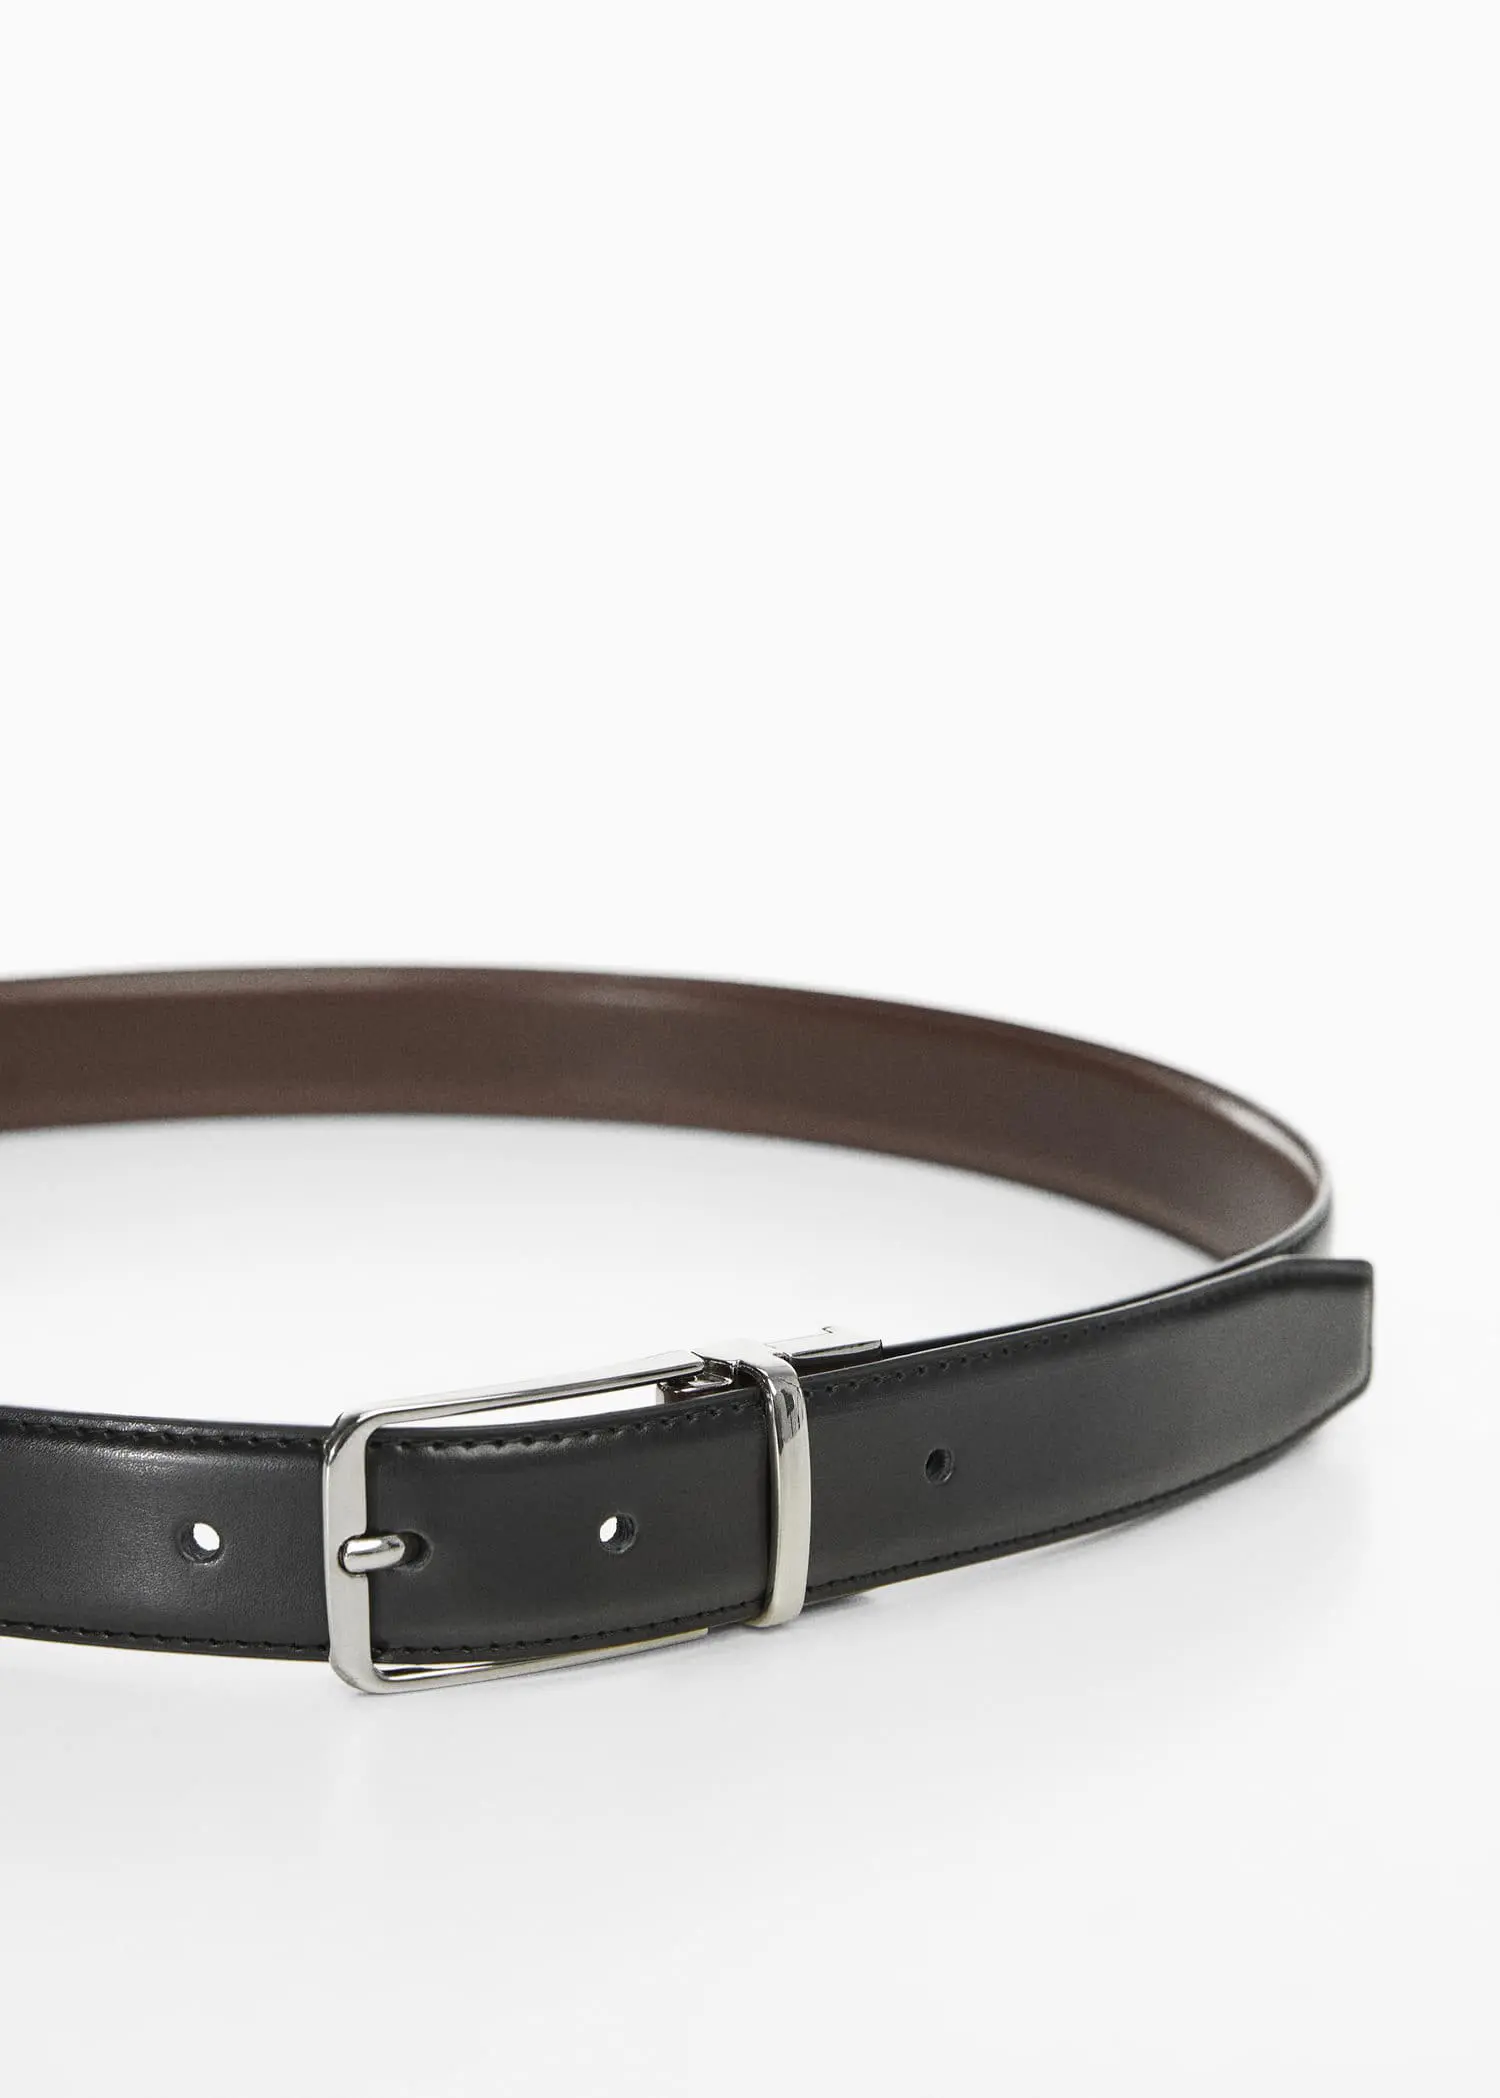 Mango Leather reversible belt. 2